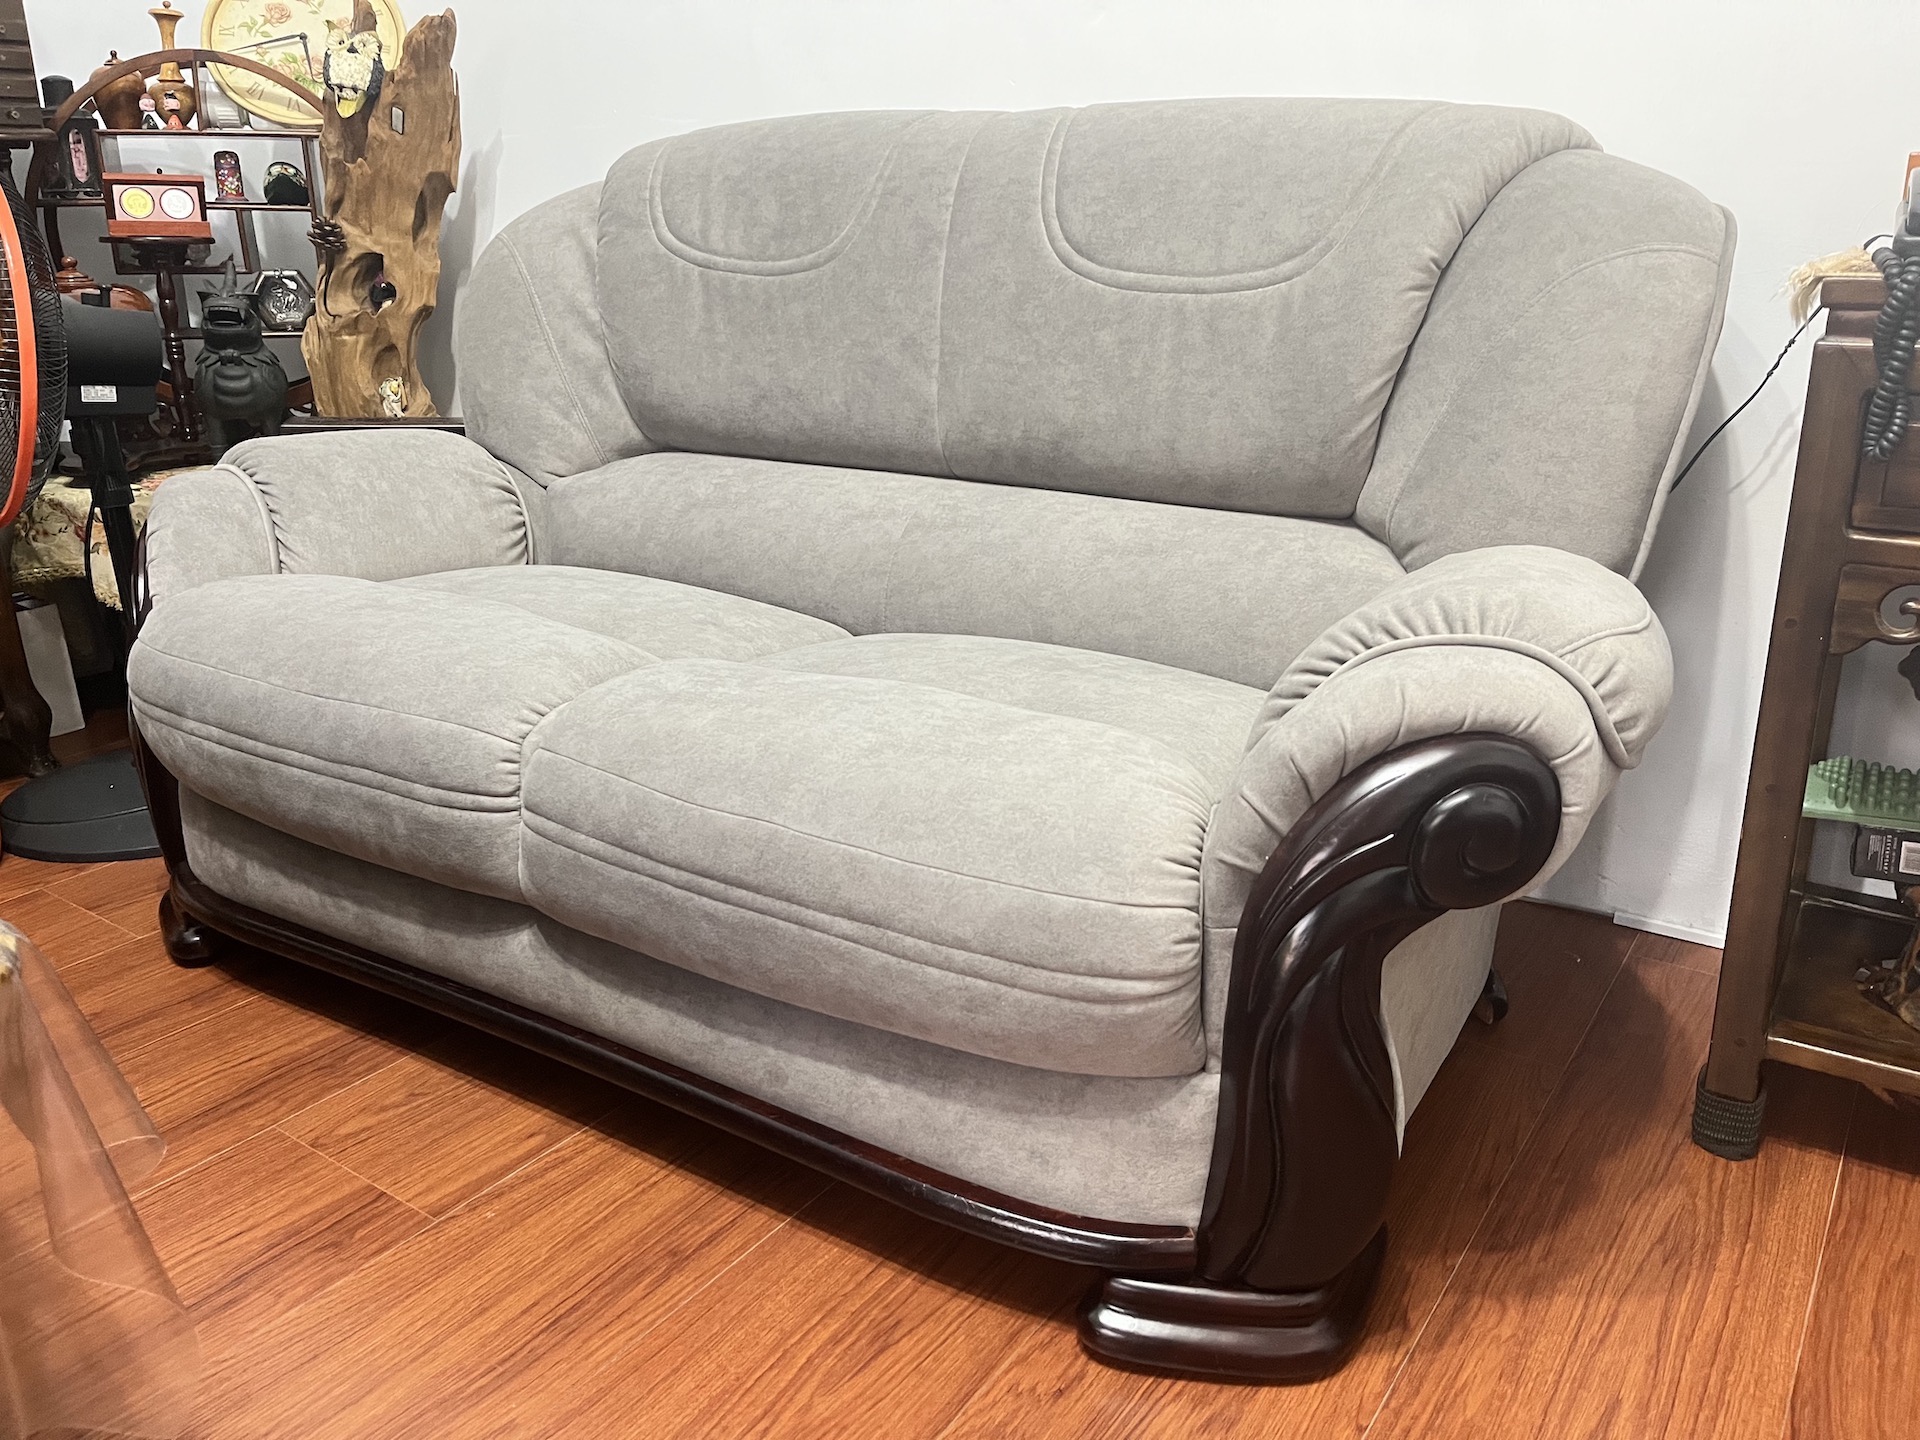 【客戶案例分享】台中太平傳統沙發更換貓抓布